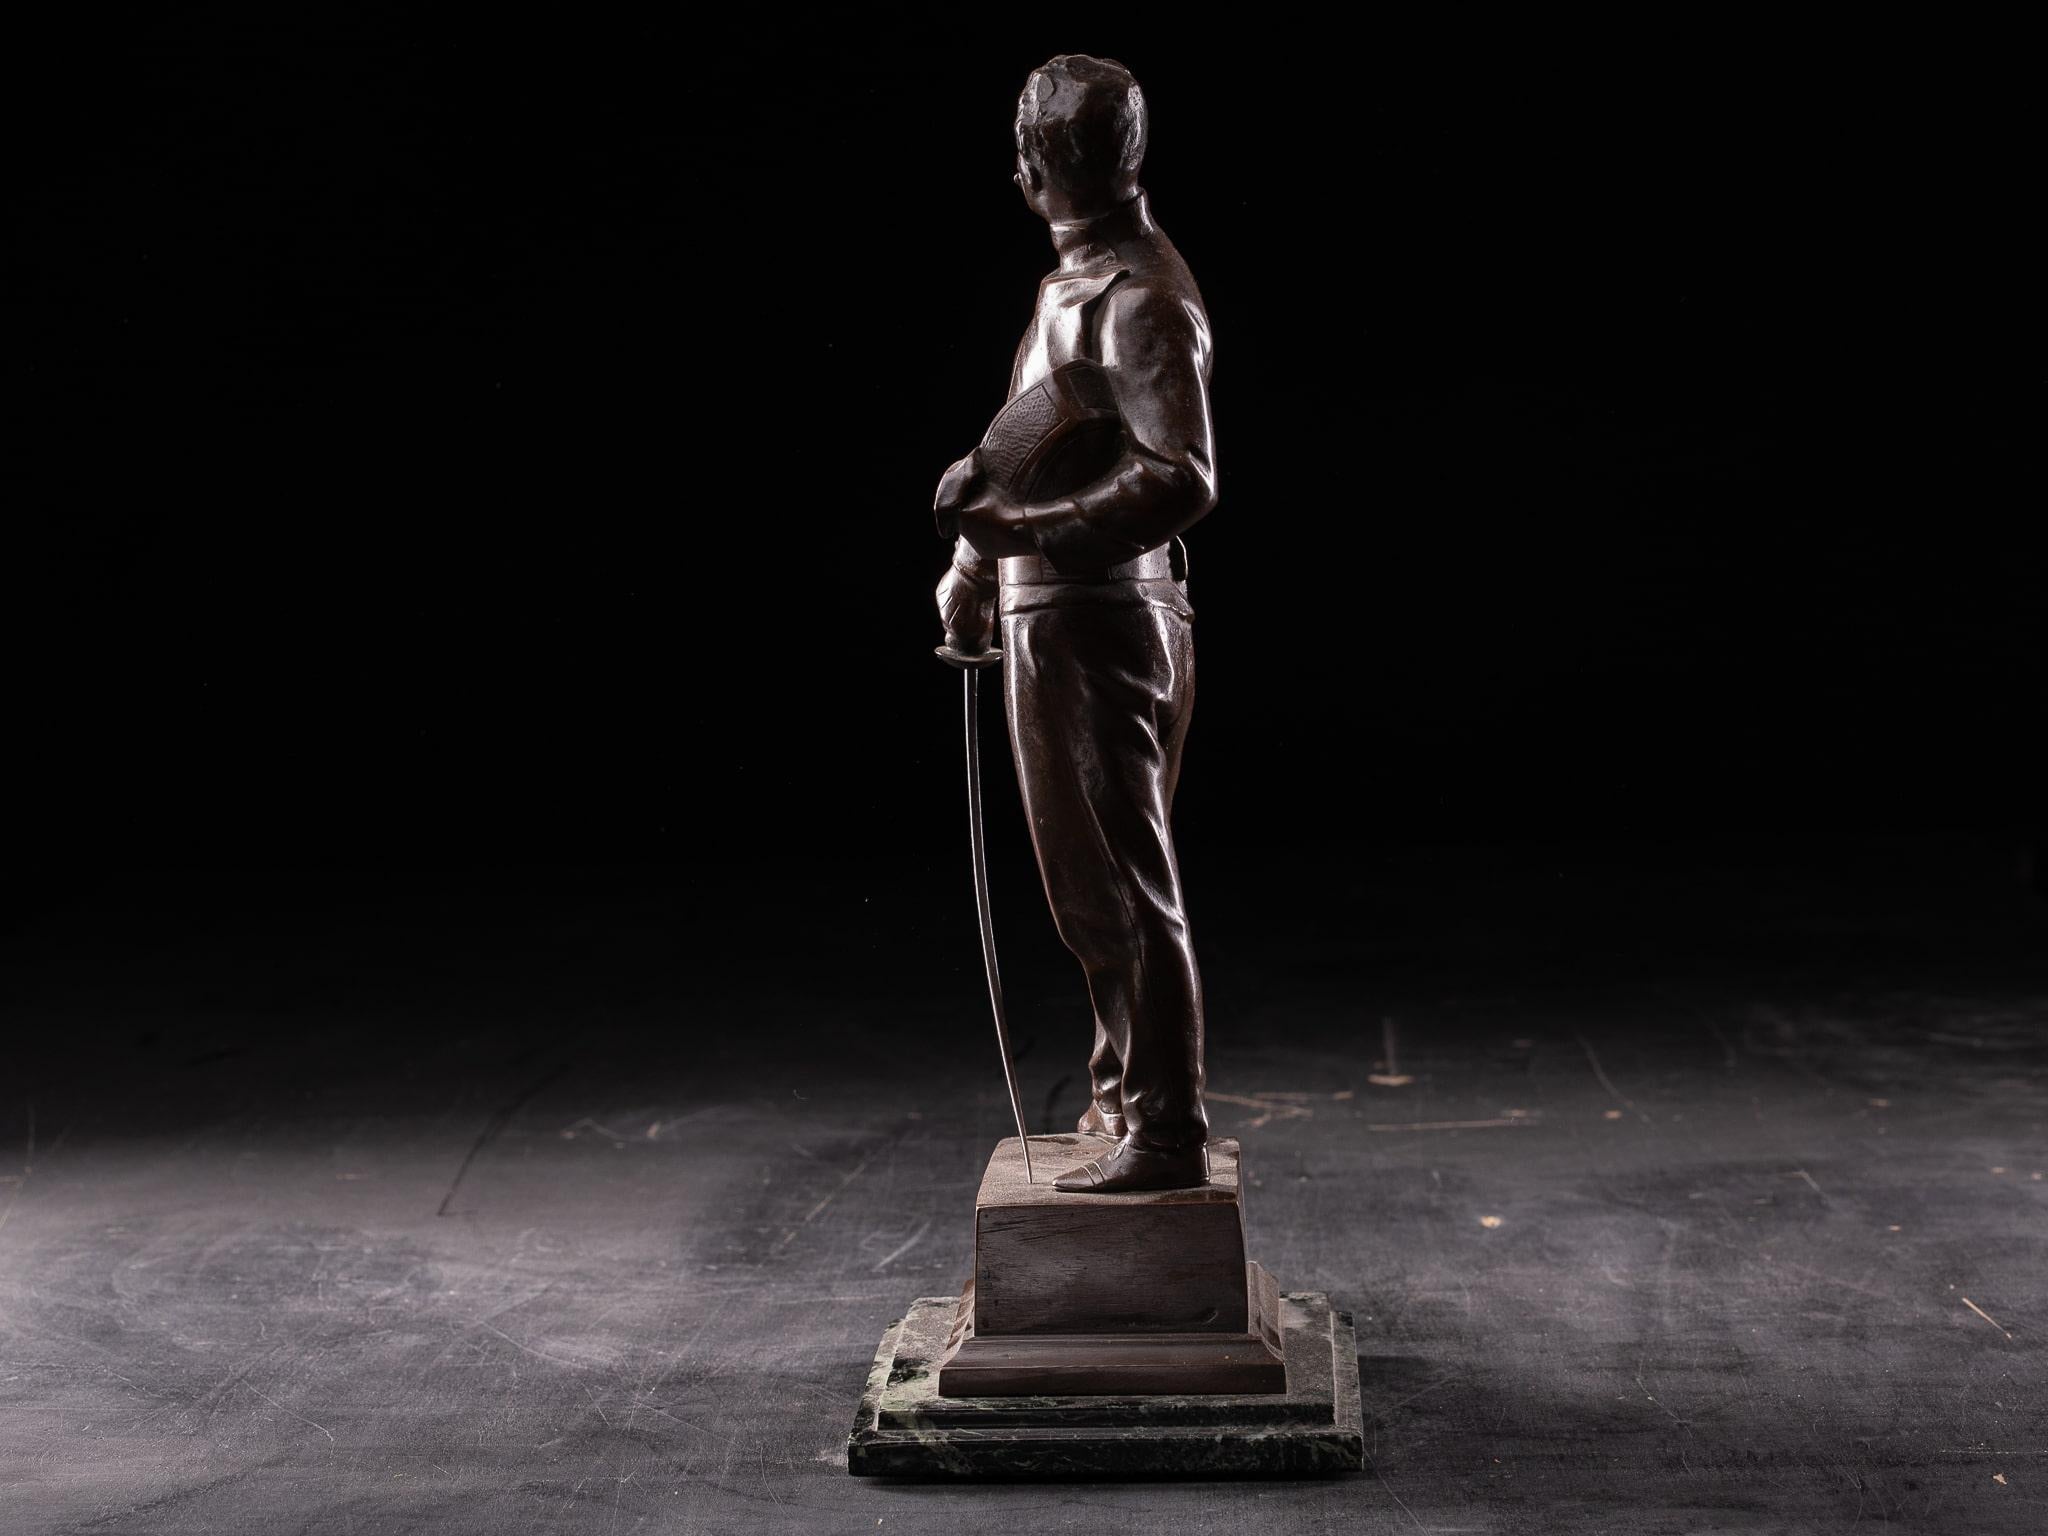 Godefroid Devreese (19 août 1861 - 31 août 1941) était un sculpteur belge. Son œuvre a fait partie de l'épreuve de sculpture du concours d'art des Jeux olympiques. Il étudie d'abord avec son père, puis poursuit ses études aux académies de Courtrai